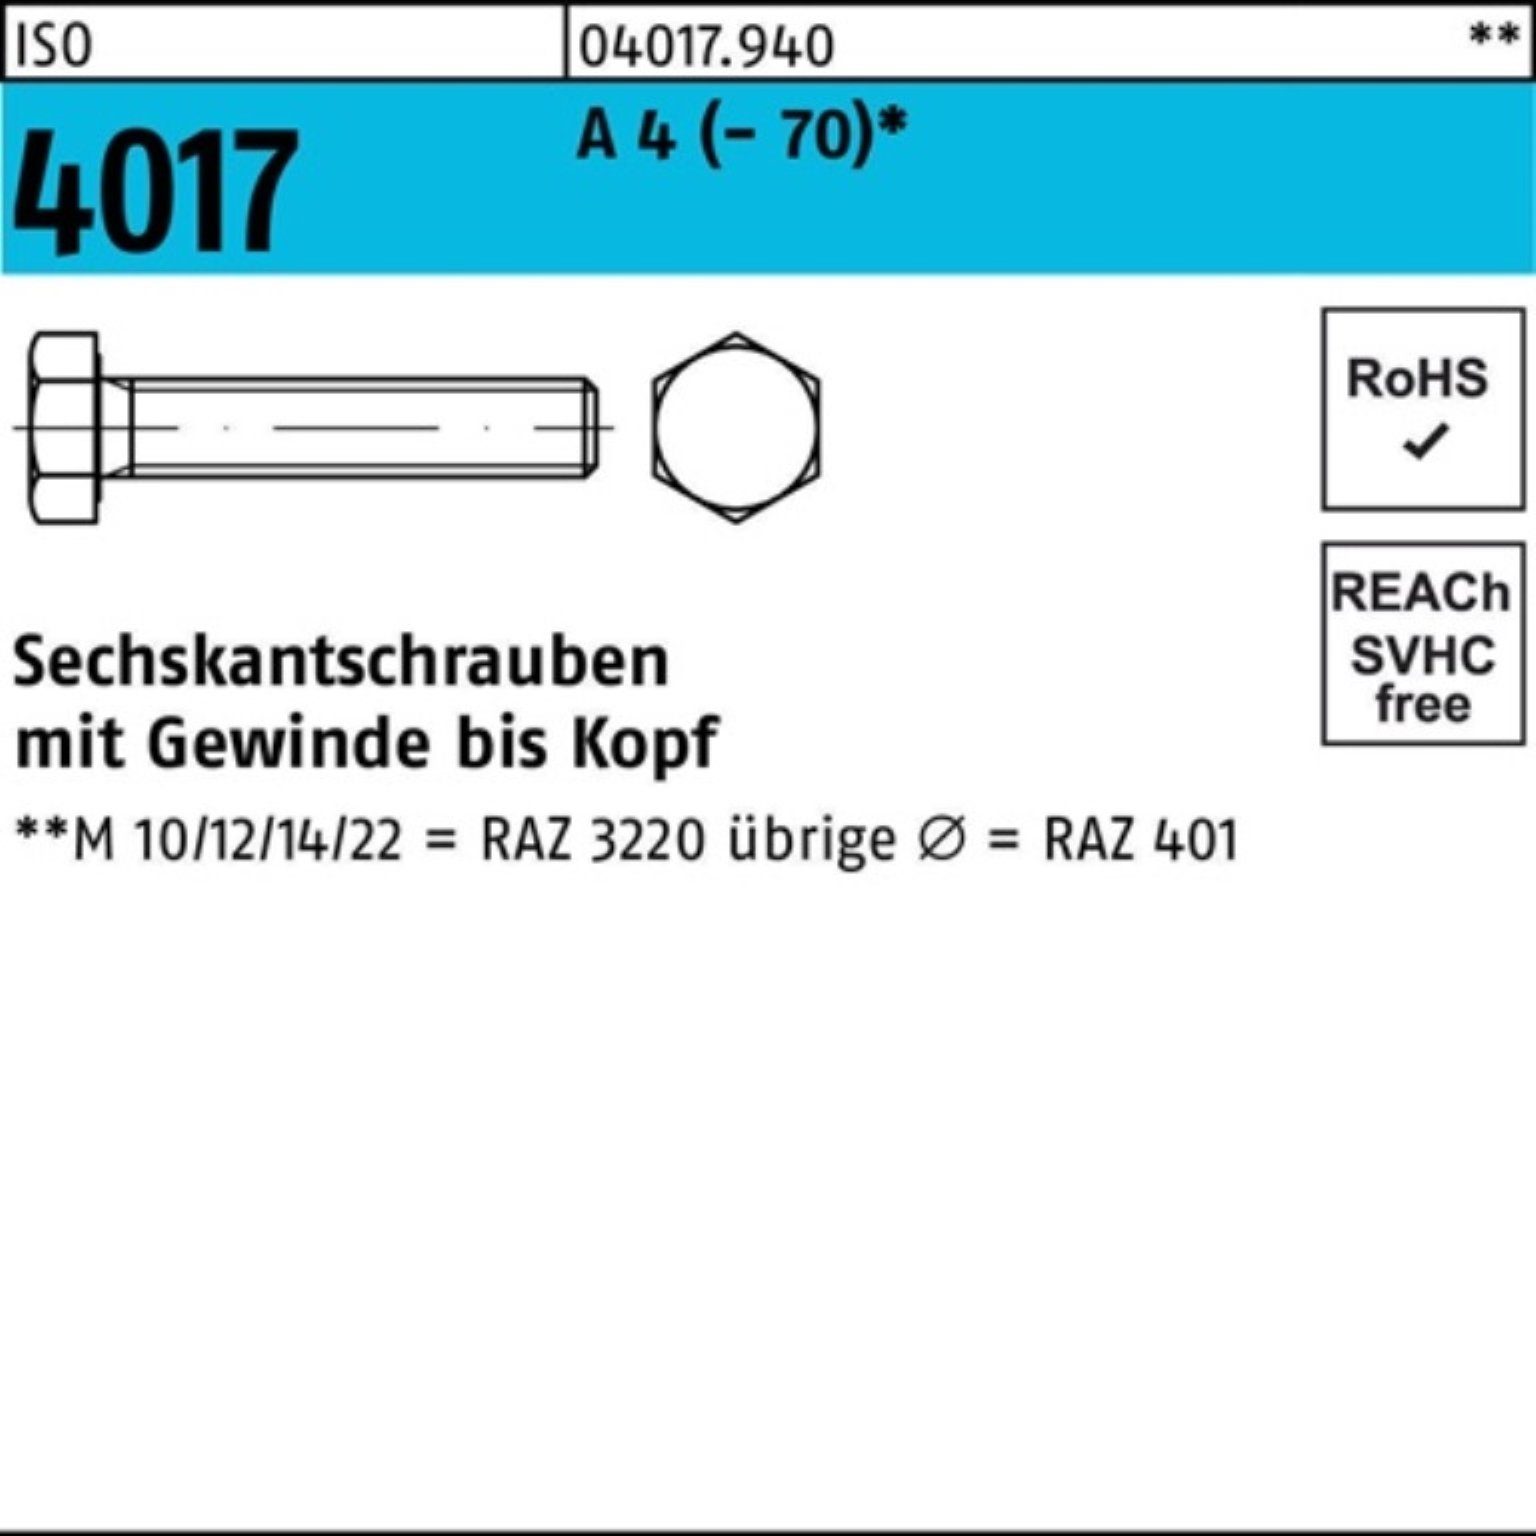 Bufab Sechskantschraube 100er Pack Sechskantschraube ISO 4017 VG M5x 18 A 4 (70) 100 Stück